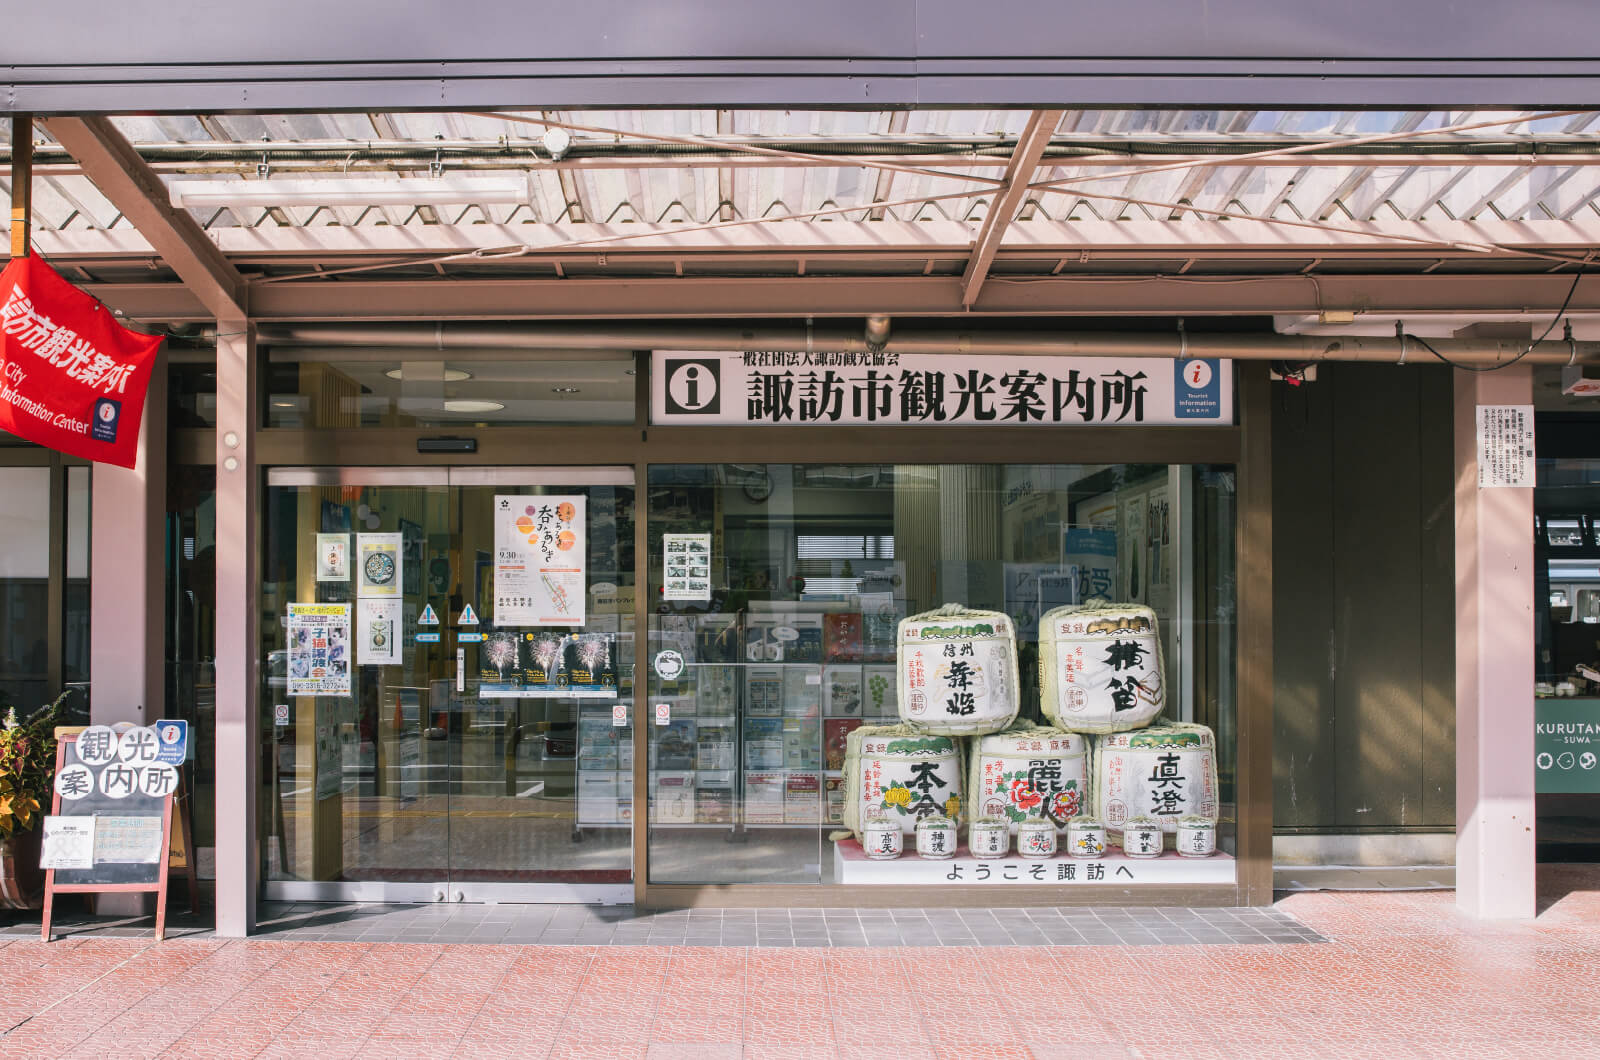 Get your Gokuraku Set at the Suwa City Tourism Information Center